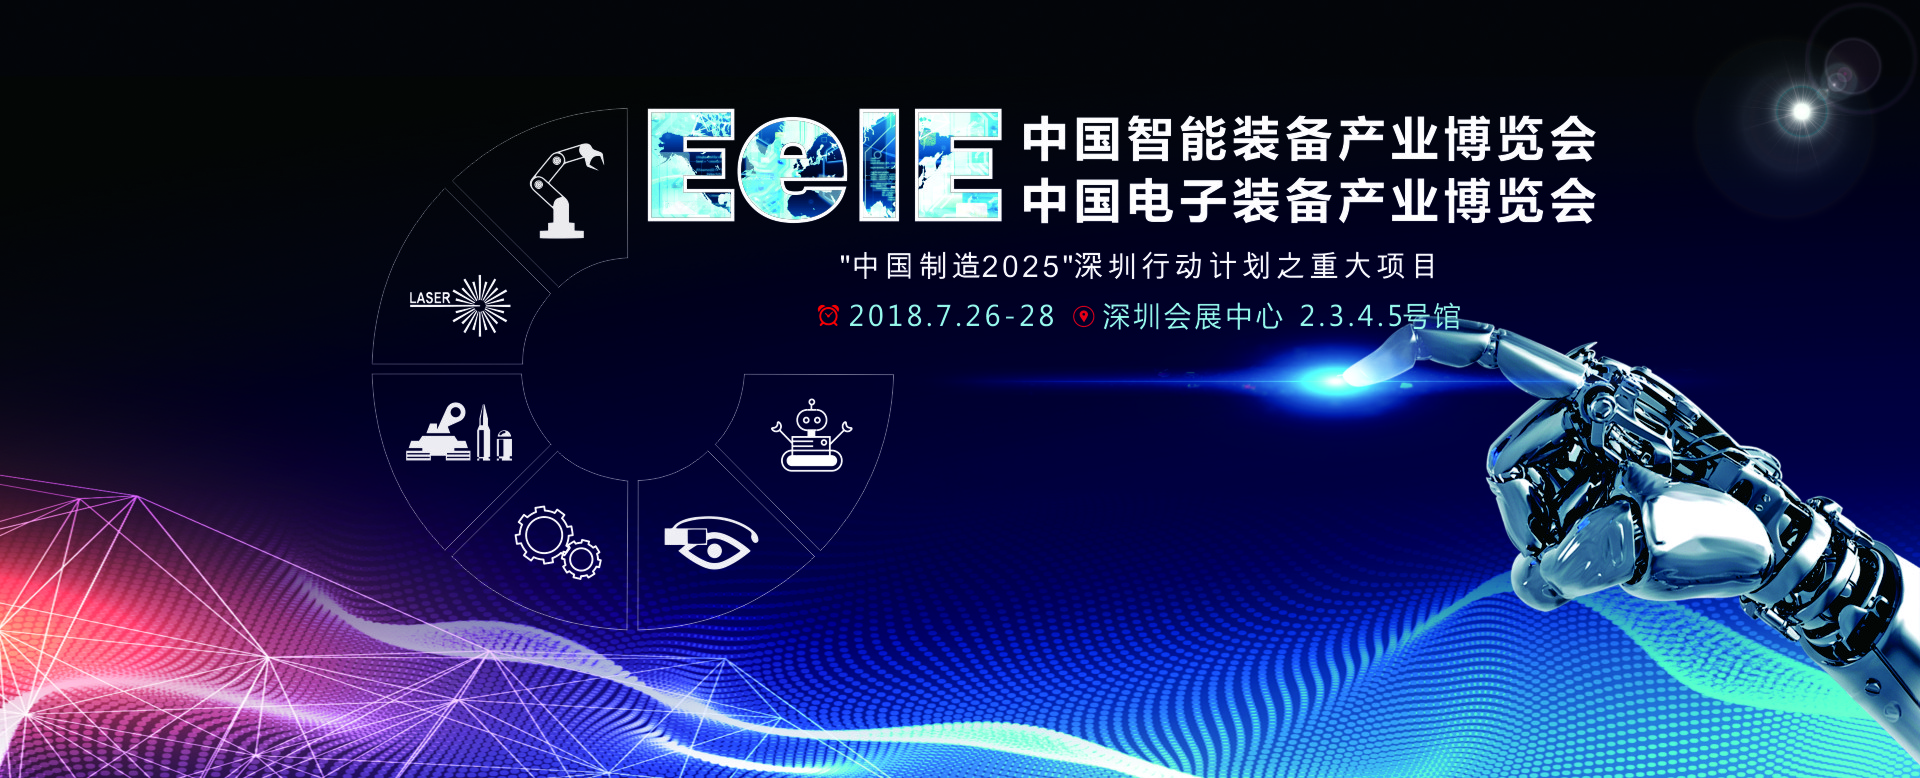 中国智能装备产业博览会 中国电子装备产业博览会